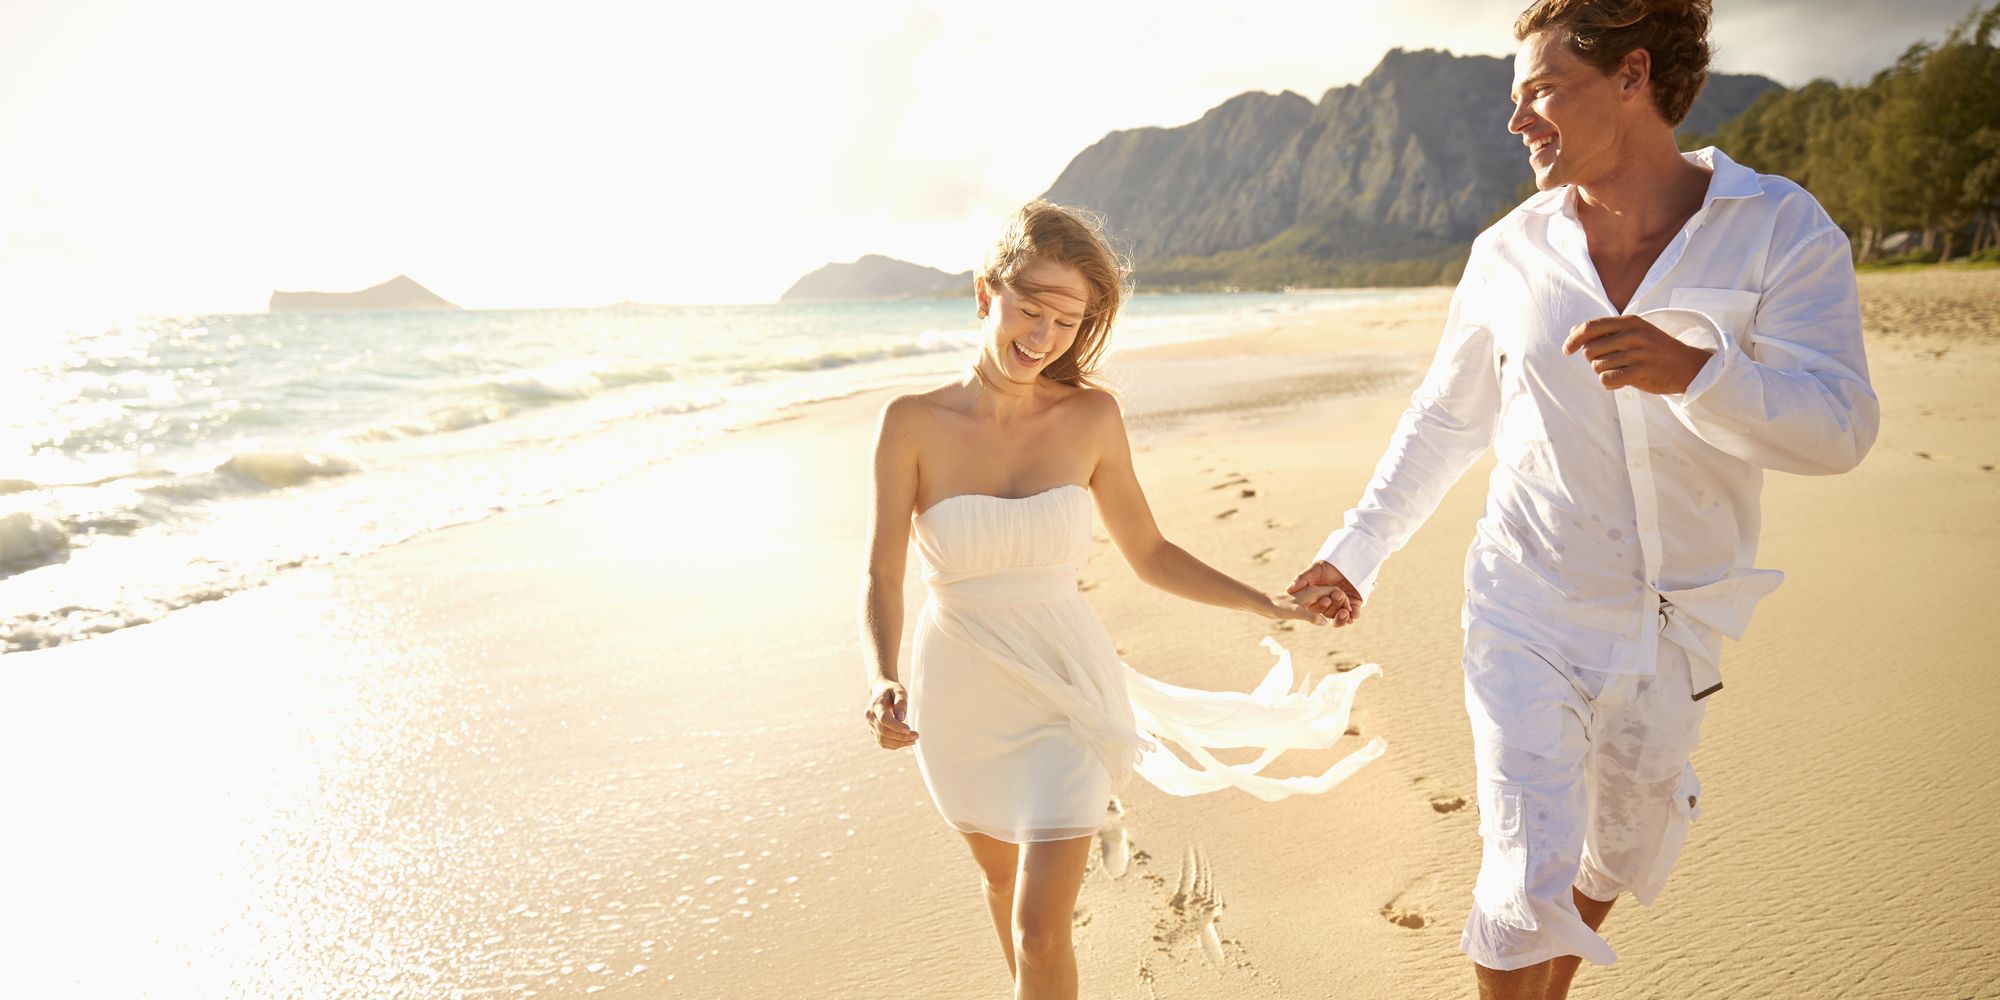 Matrimonio In Spiaggia 14 Abiti Da Sposa Per Celebrare In Riva Al Mare